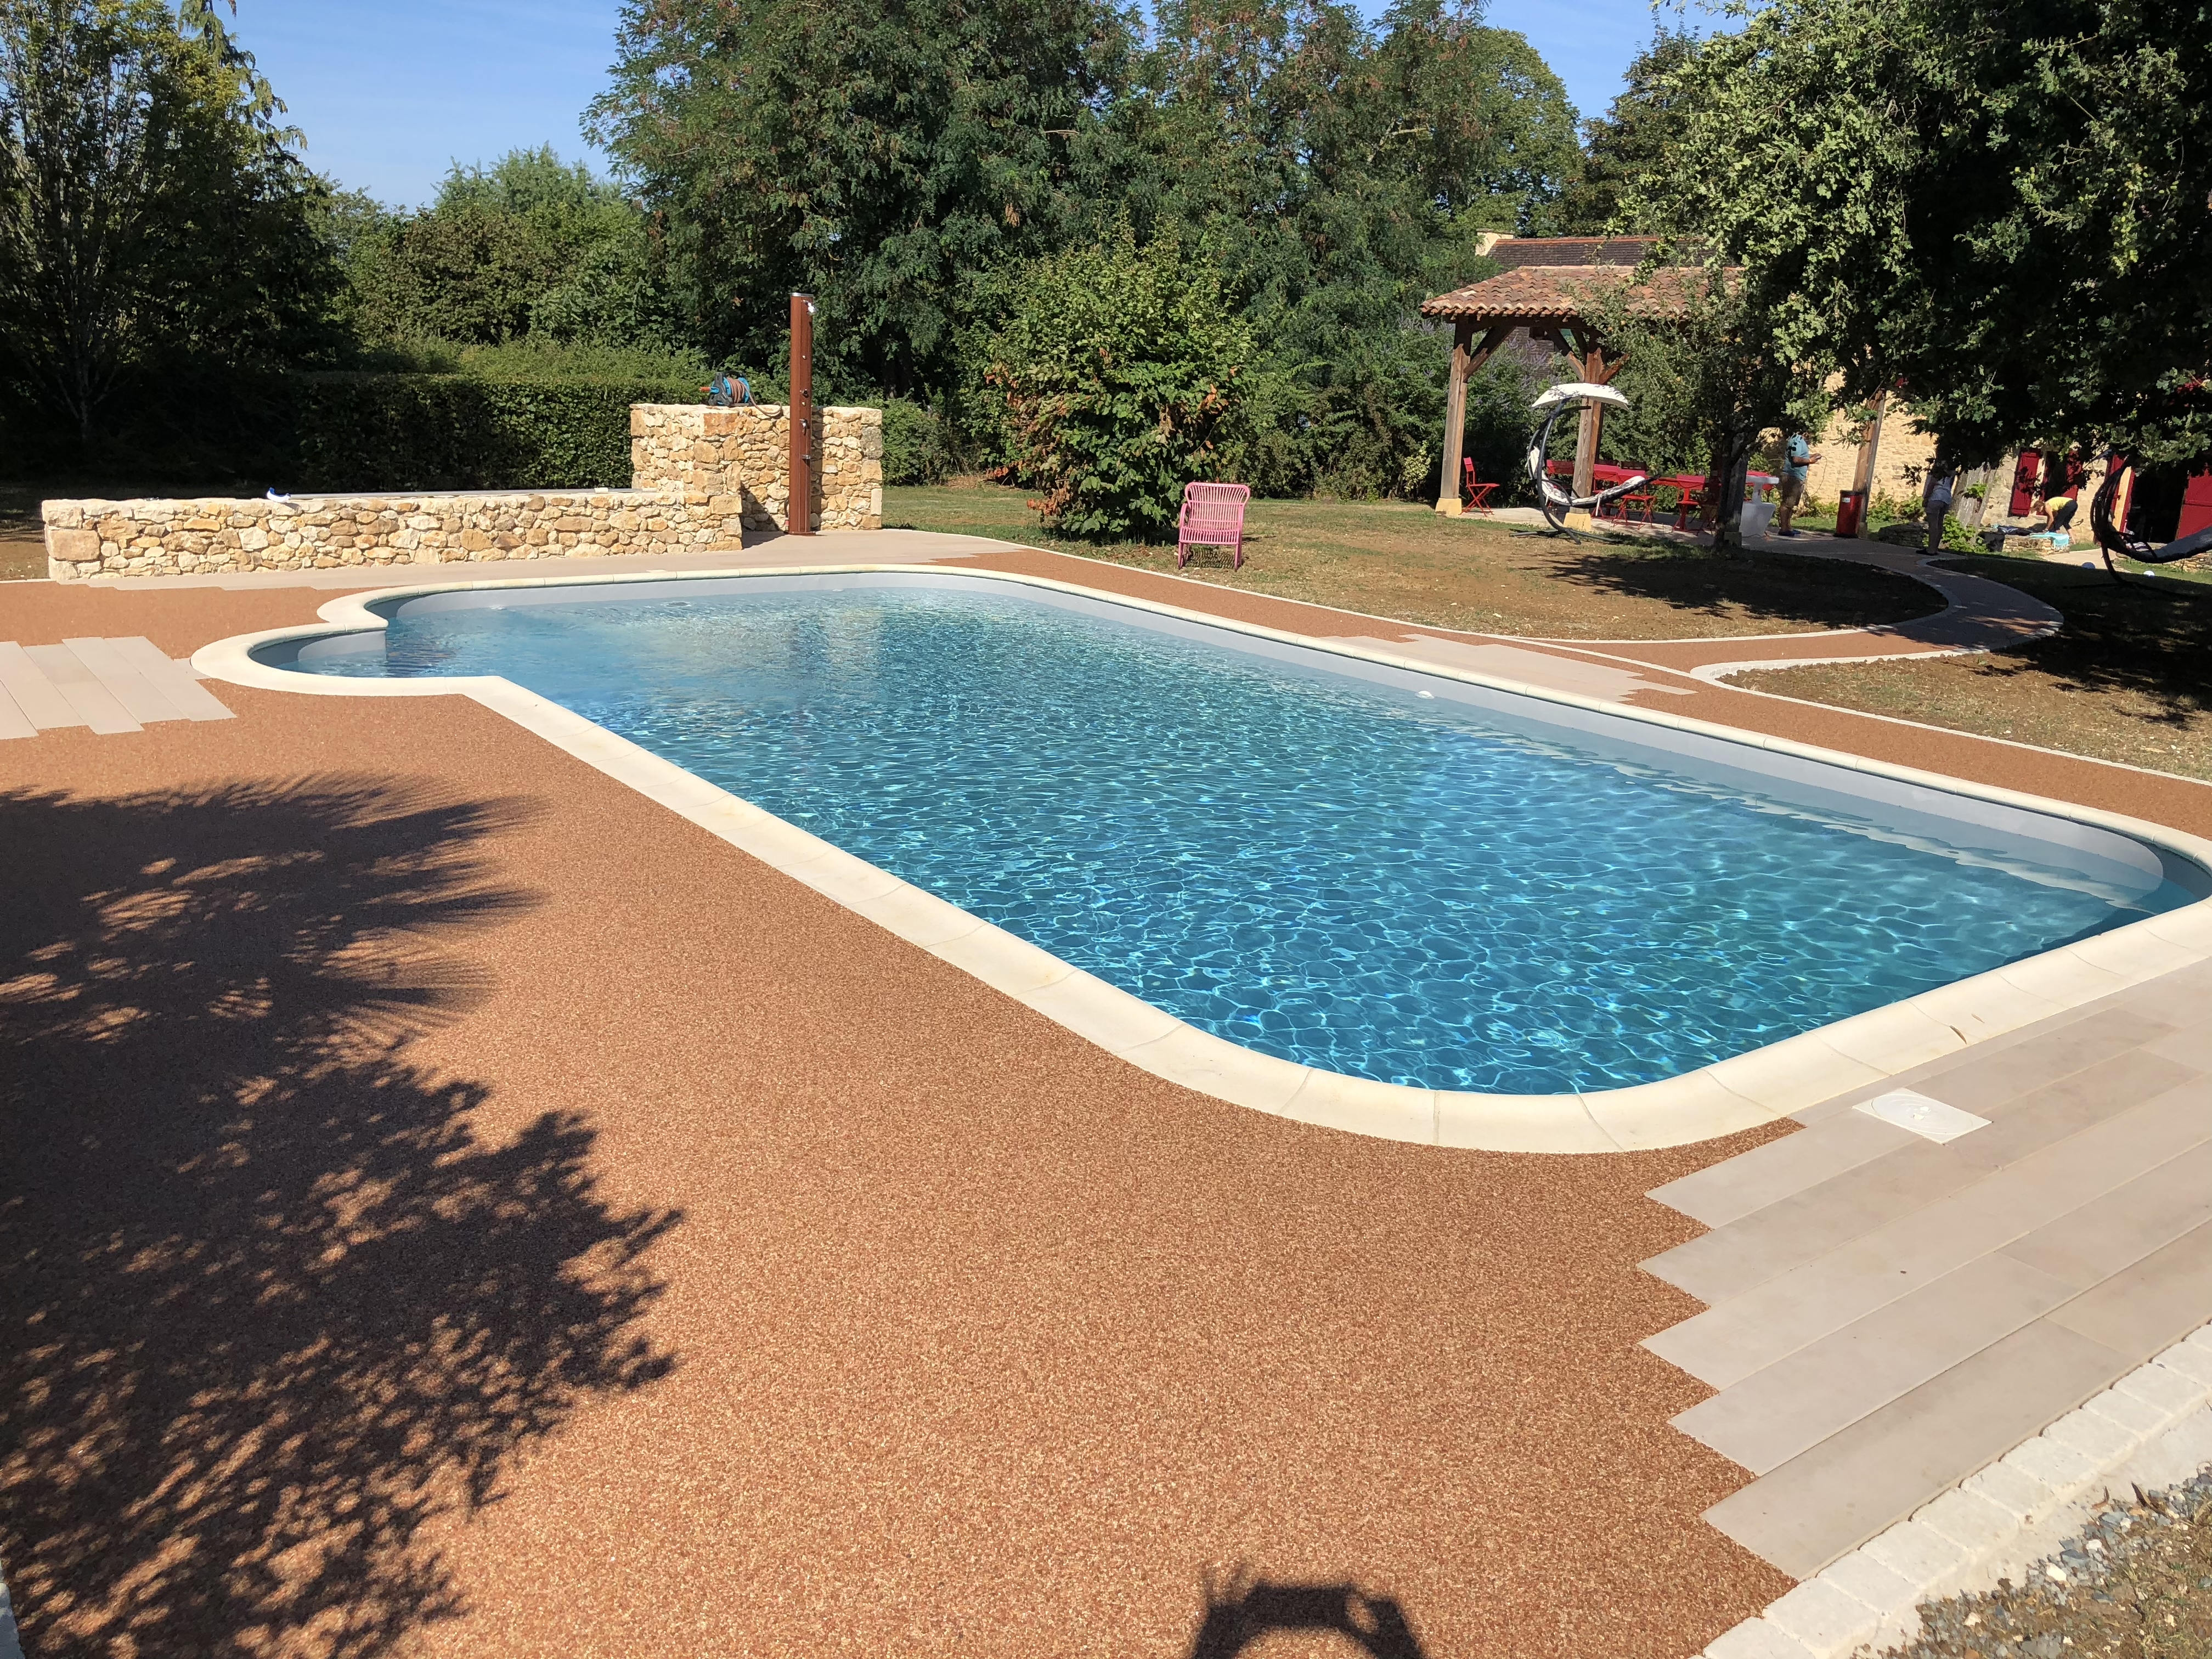 Conception Plage de piscine en Boib et Hydrostar - Dordogne cre le 18/05/2021